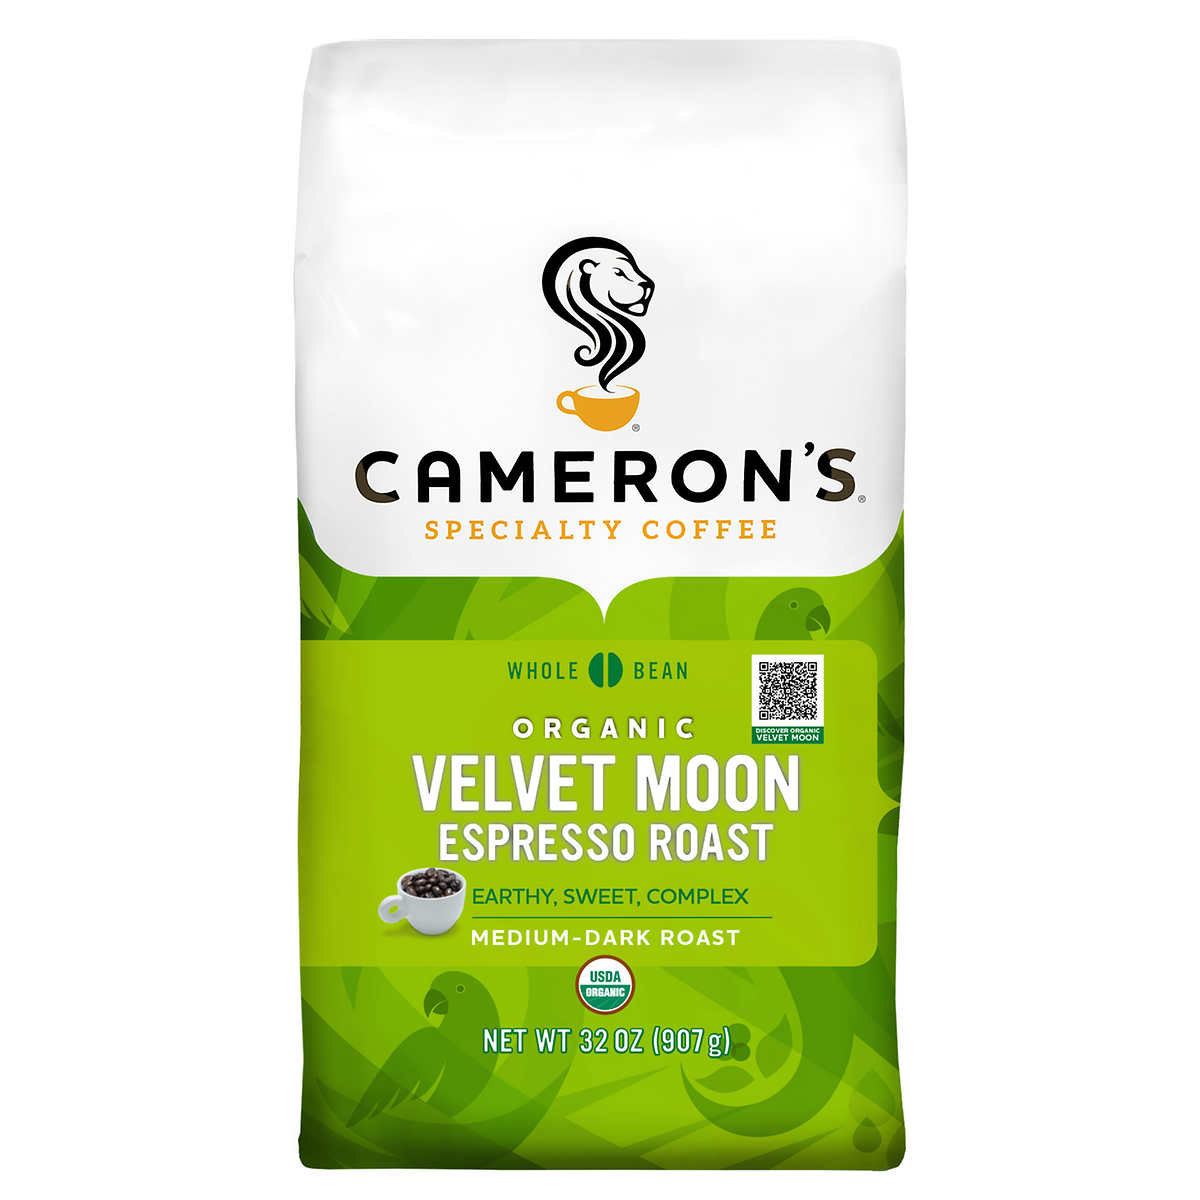 Cameron's Specialty Coffee Organic Velvet Moon